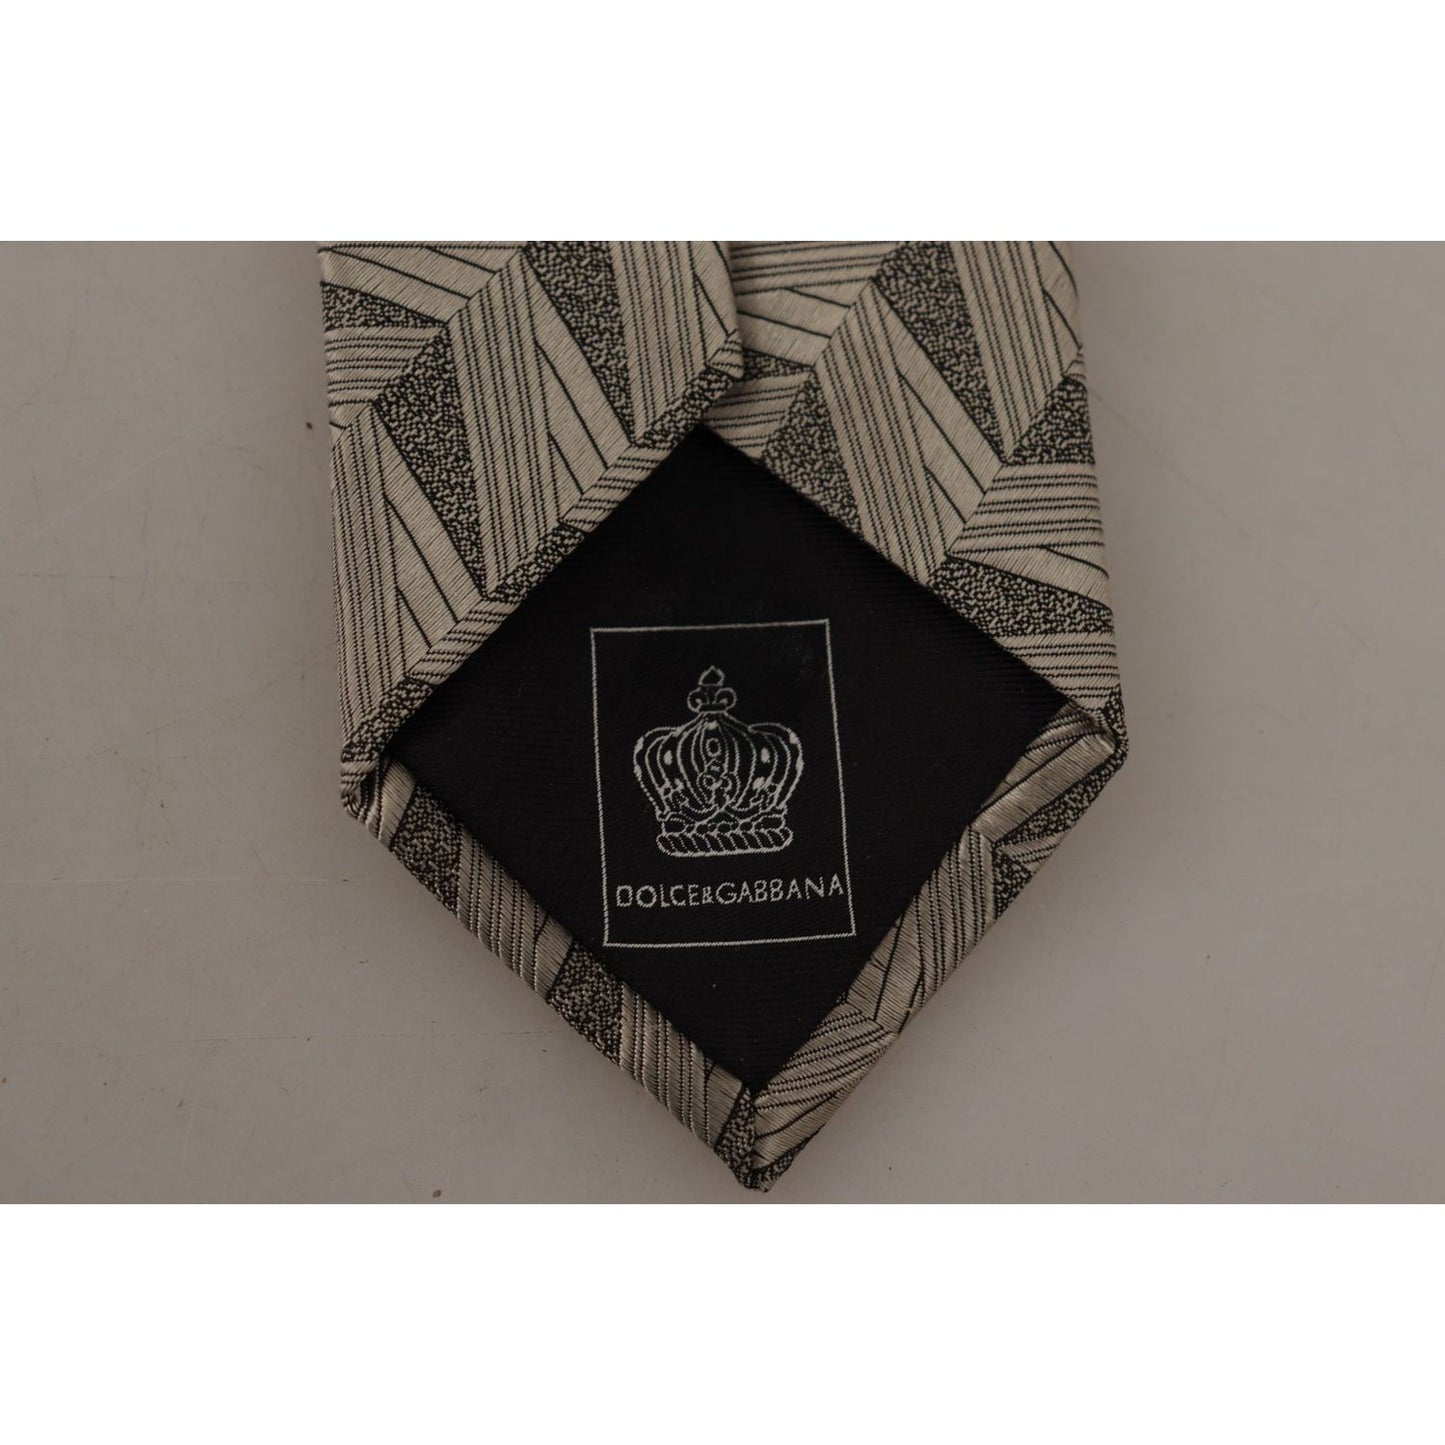 Dolce & Gabbana Stunning Beige Silk Bow Tie beige-fantasy-pattern-adjustable-necktie-accessory-tie IMG_3393-scaled-d49a59e2-ec5.jpg